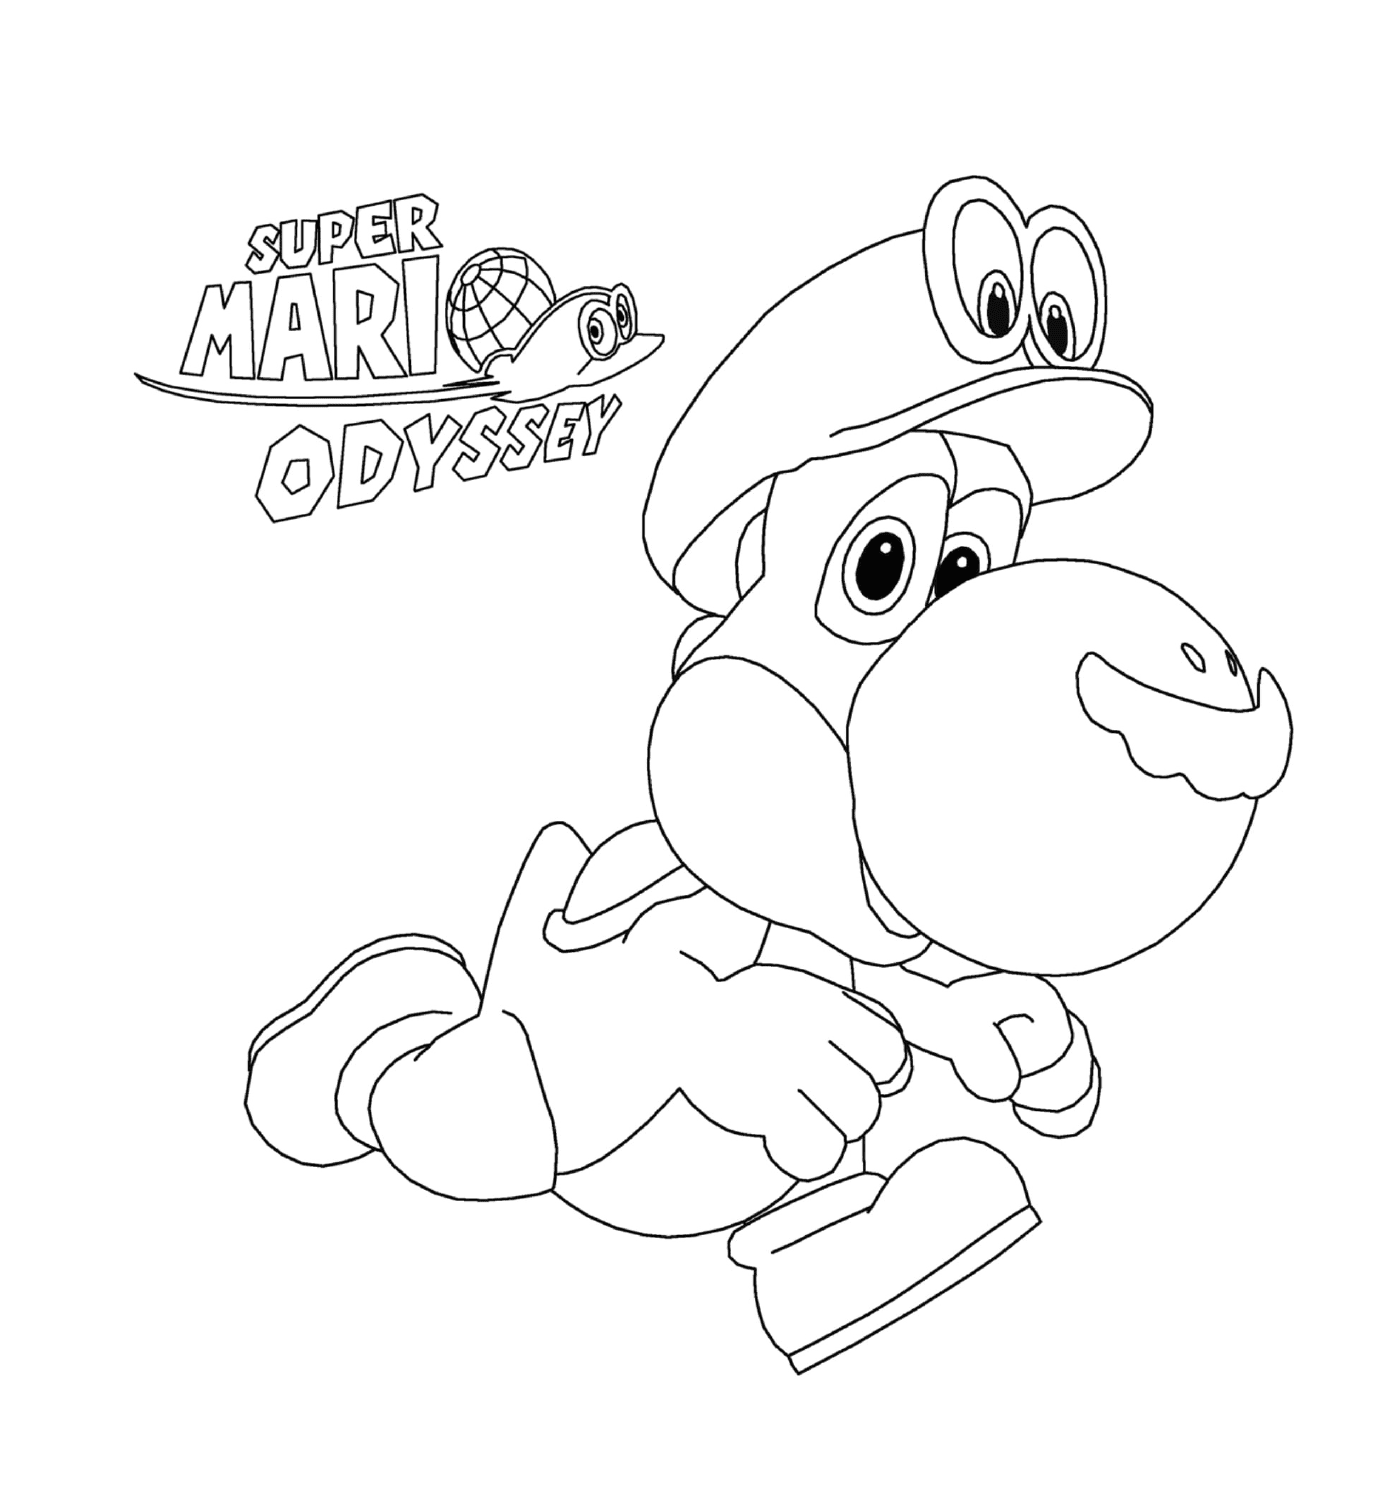  Super Mario Odyssey com Yoshi da Nintendo 